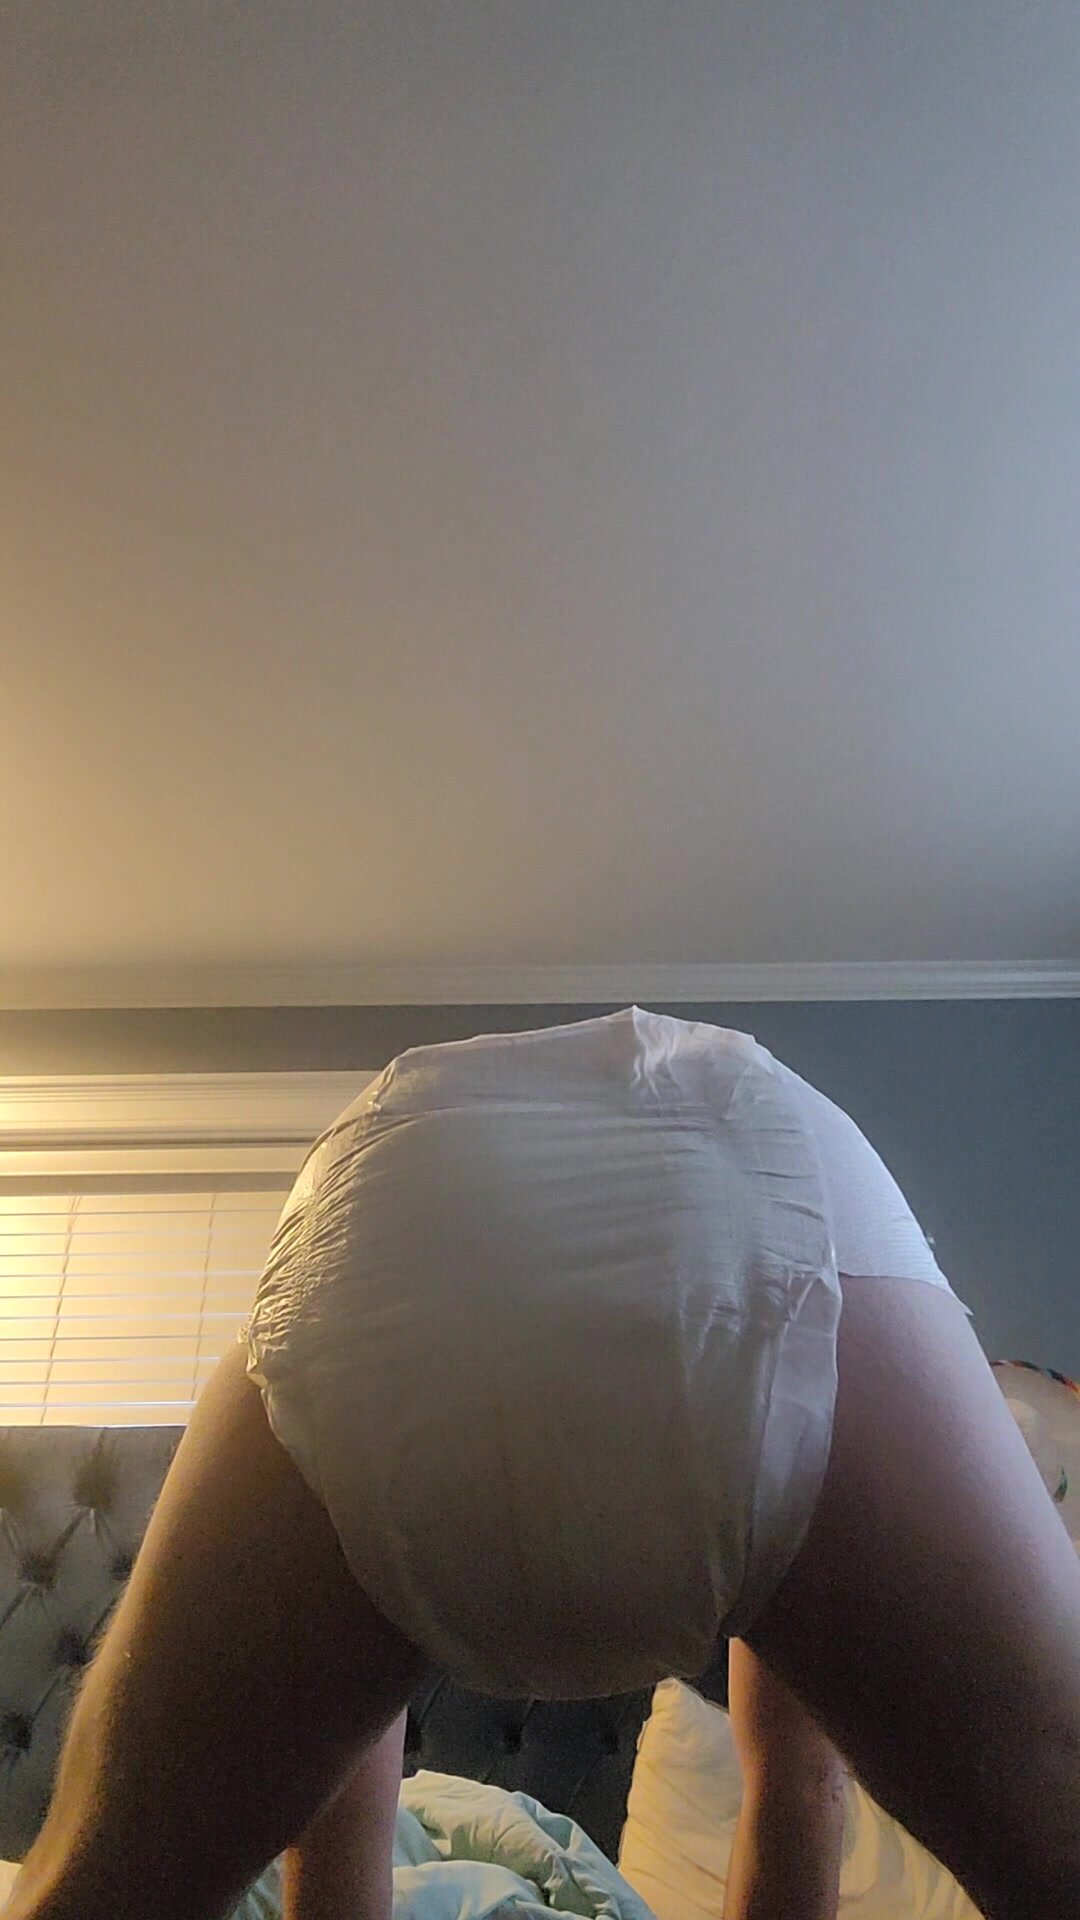 Pooping in my diaper - video 12